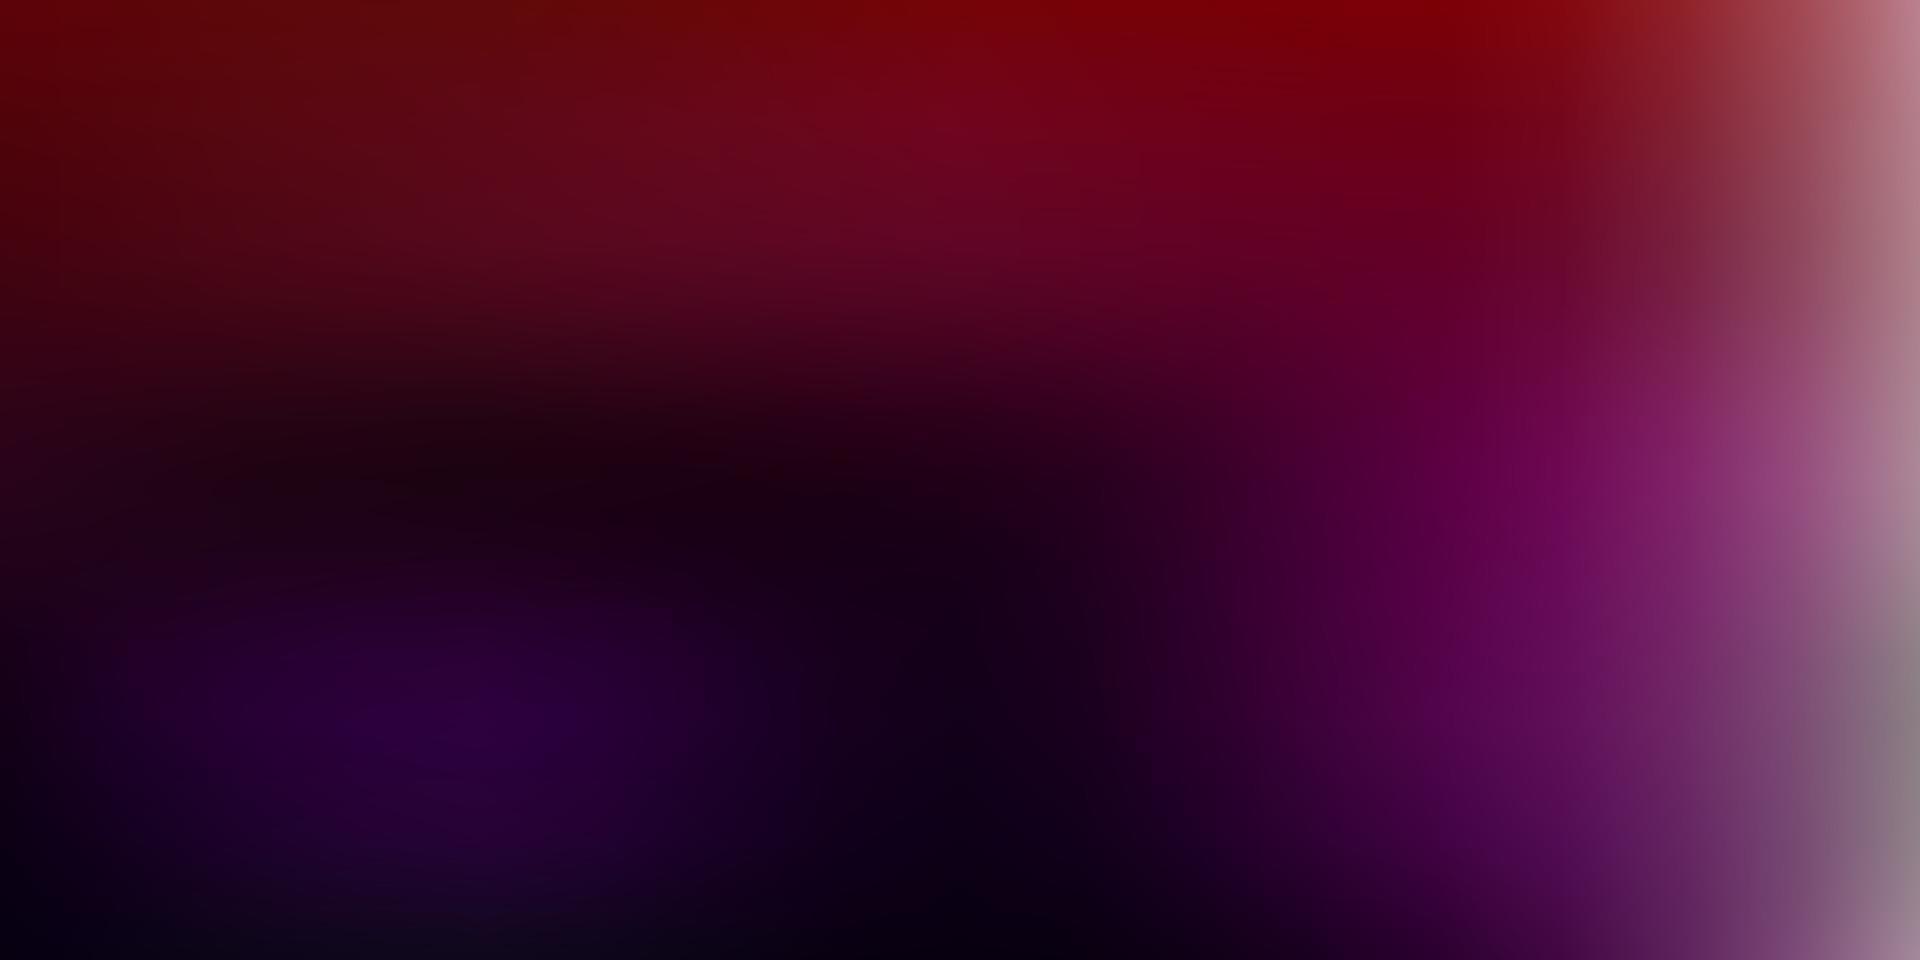 mörkrosa, röd vektor abstrakt oskärpa bakgrund.